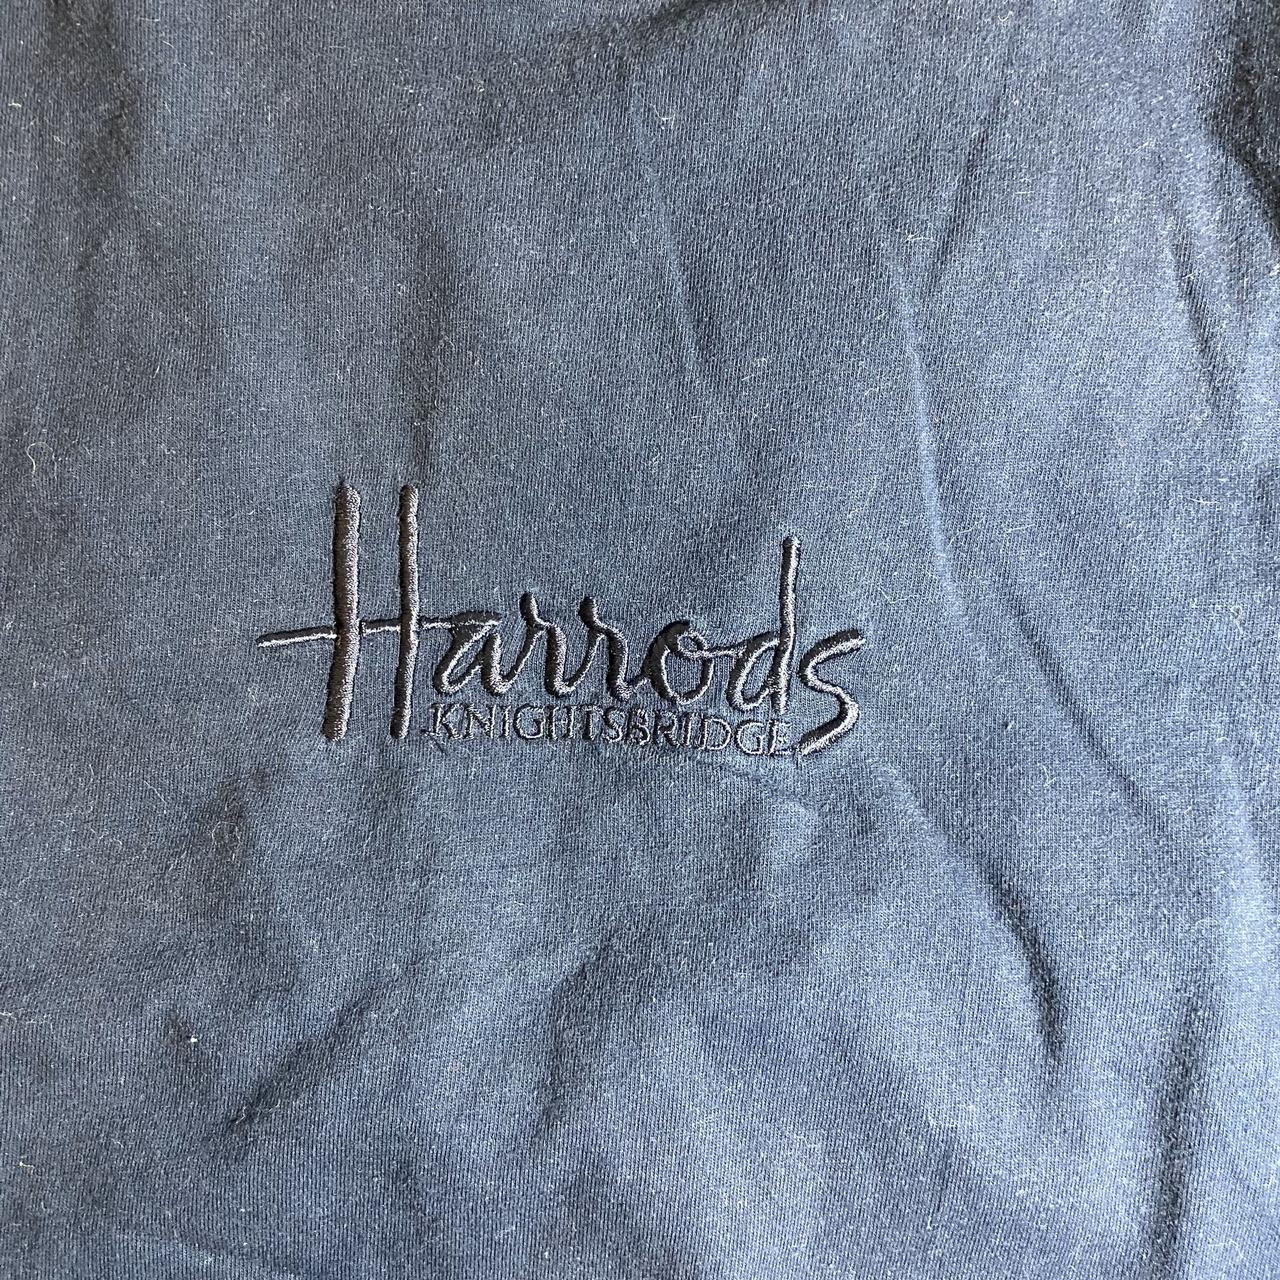 Product Image 2 - Vintage Harrods shirt size medium.